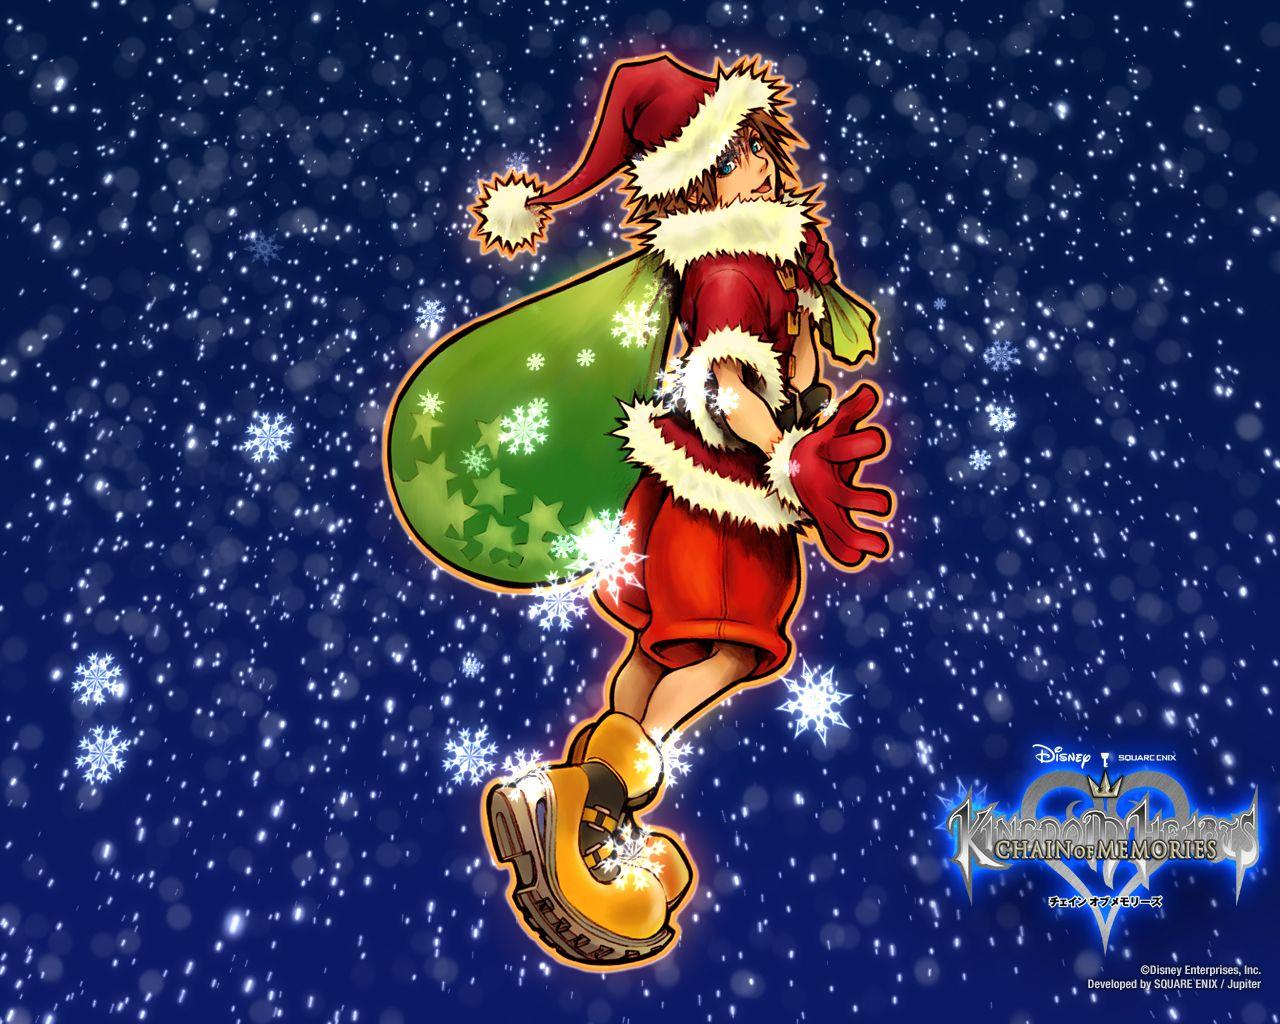 Kingdom Hearts Christmas Wallpaper at